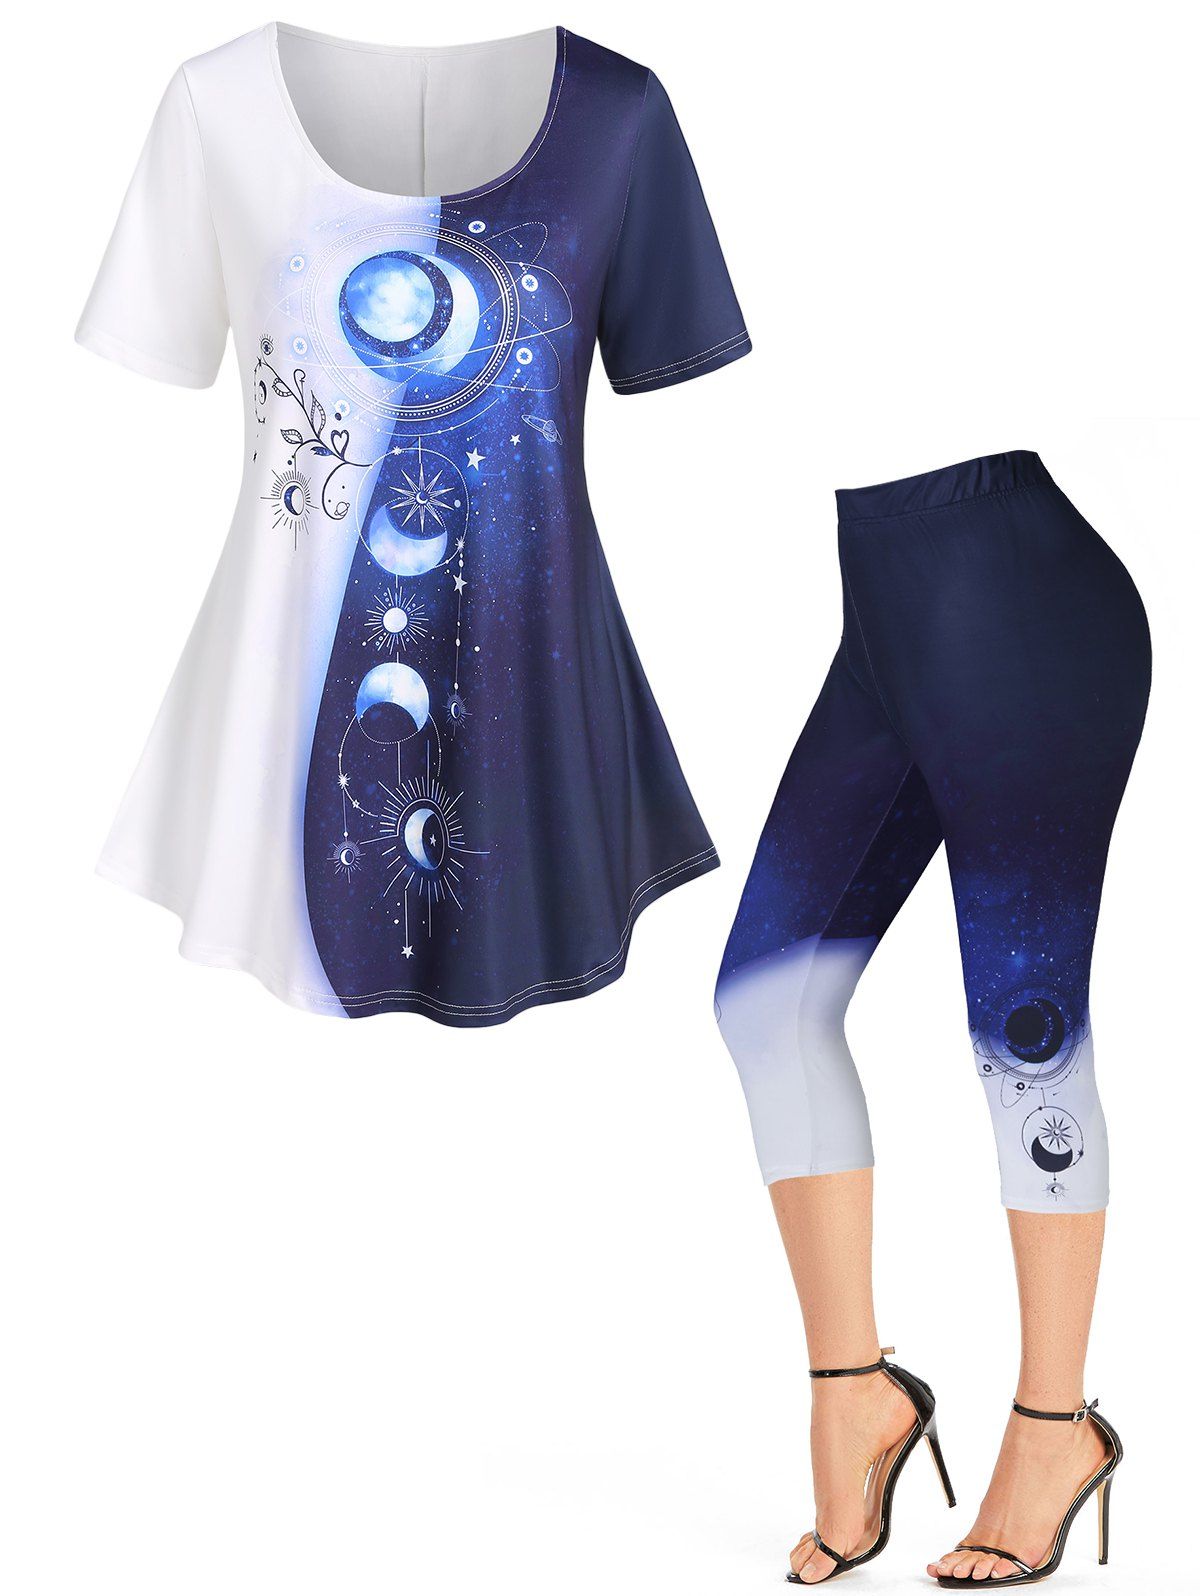 Legging Corsaire et T-shirt D'Eté Lune Soleil et Galaxie en Blocs de Couleurs - Bleu profond S